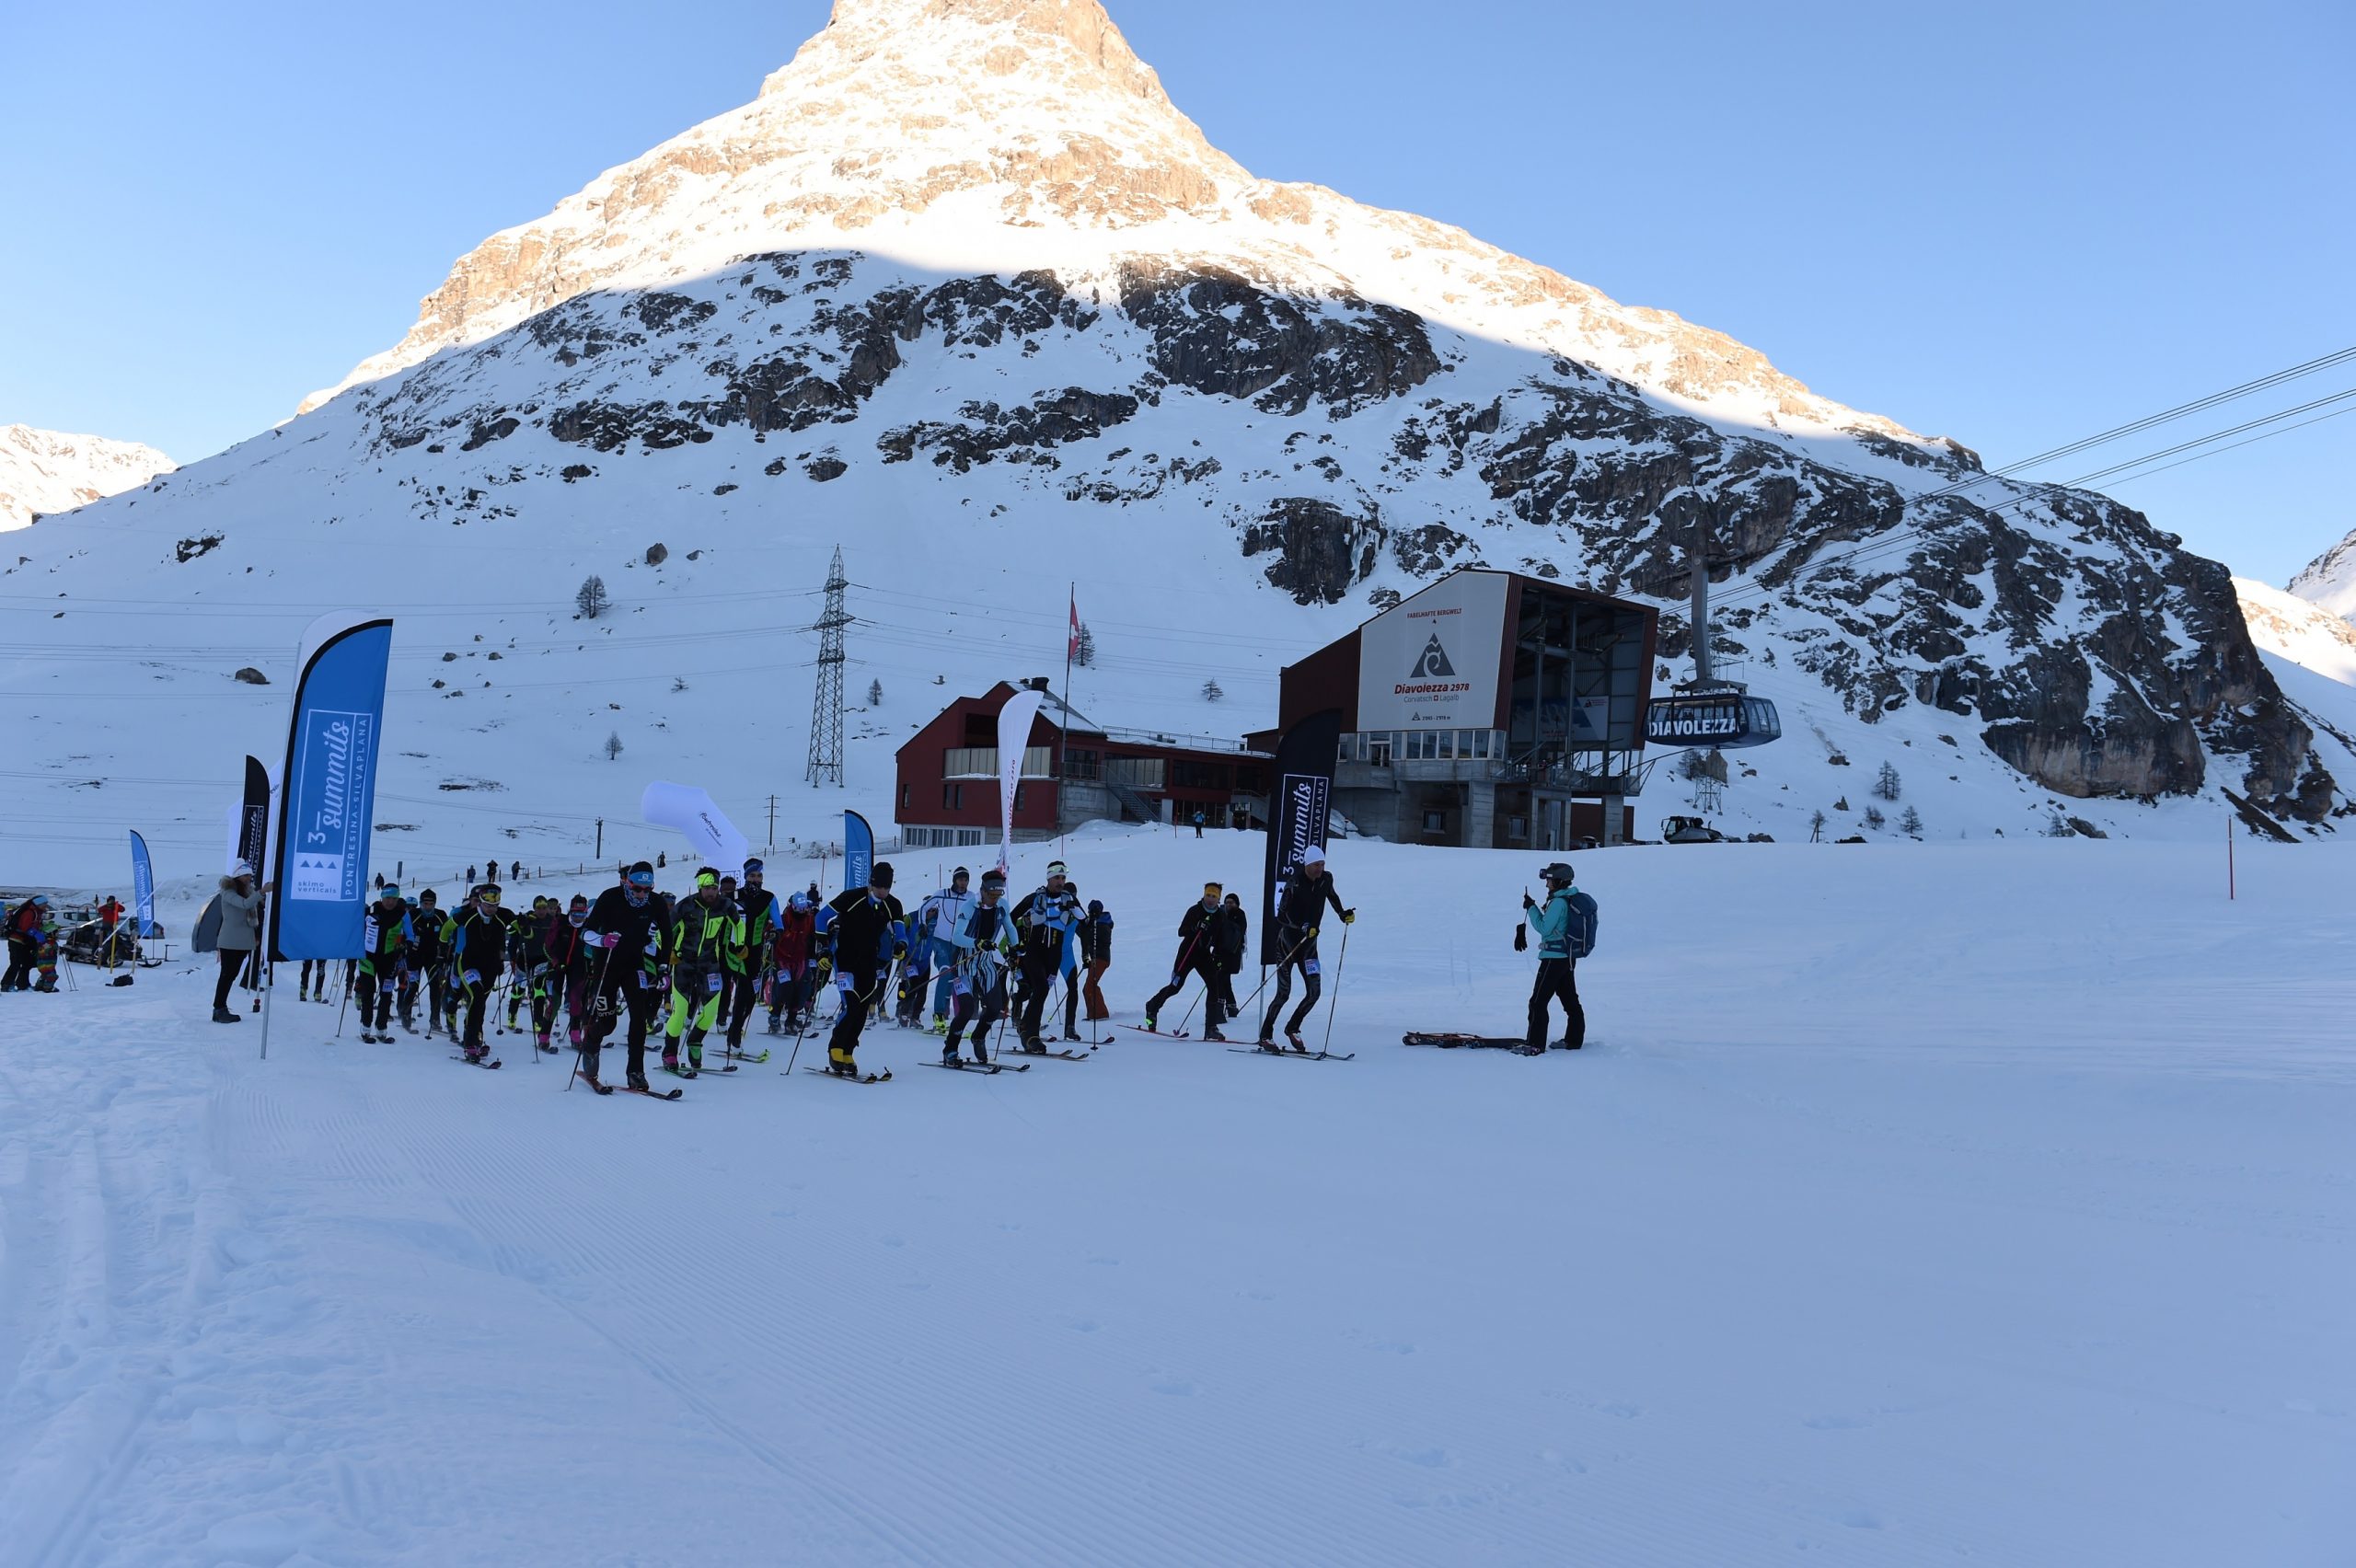 3-Summits - Diavolezza - 2020
Skitourenwettkampf mit Hhenunterschied: 890 hm, Distanz: 4.5 km
https://www.3-summits.ch